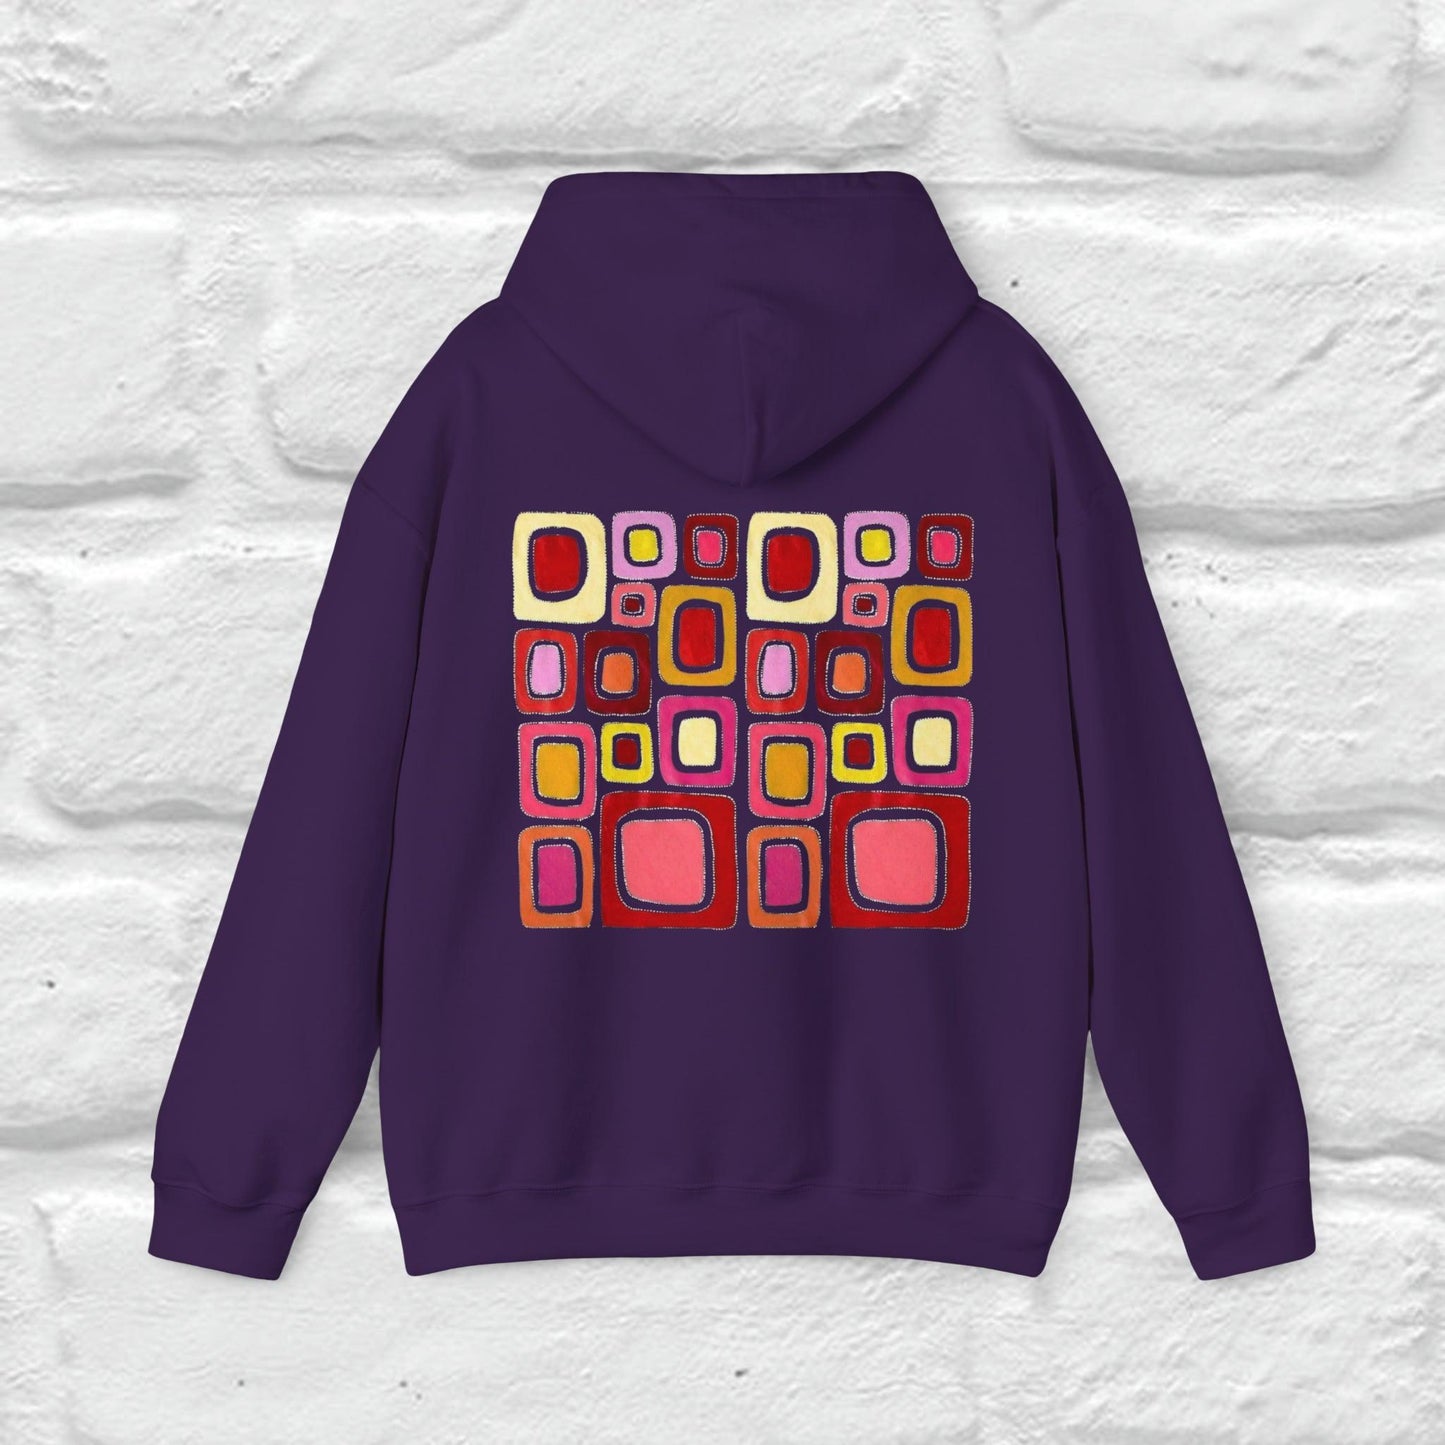 Sweatshirt à capuche MotherLand Heavy Blend™ : couleurs roses